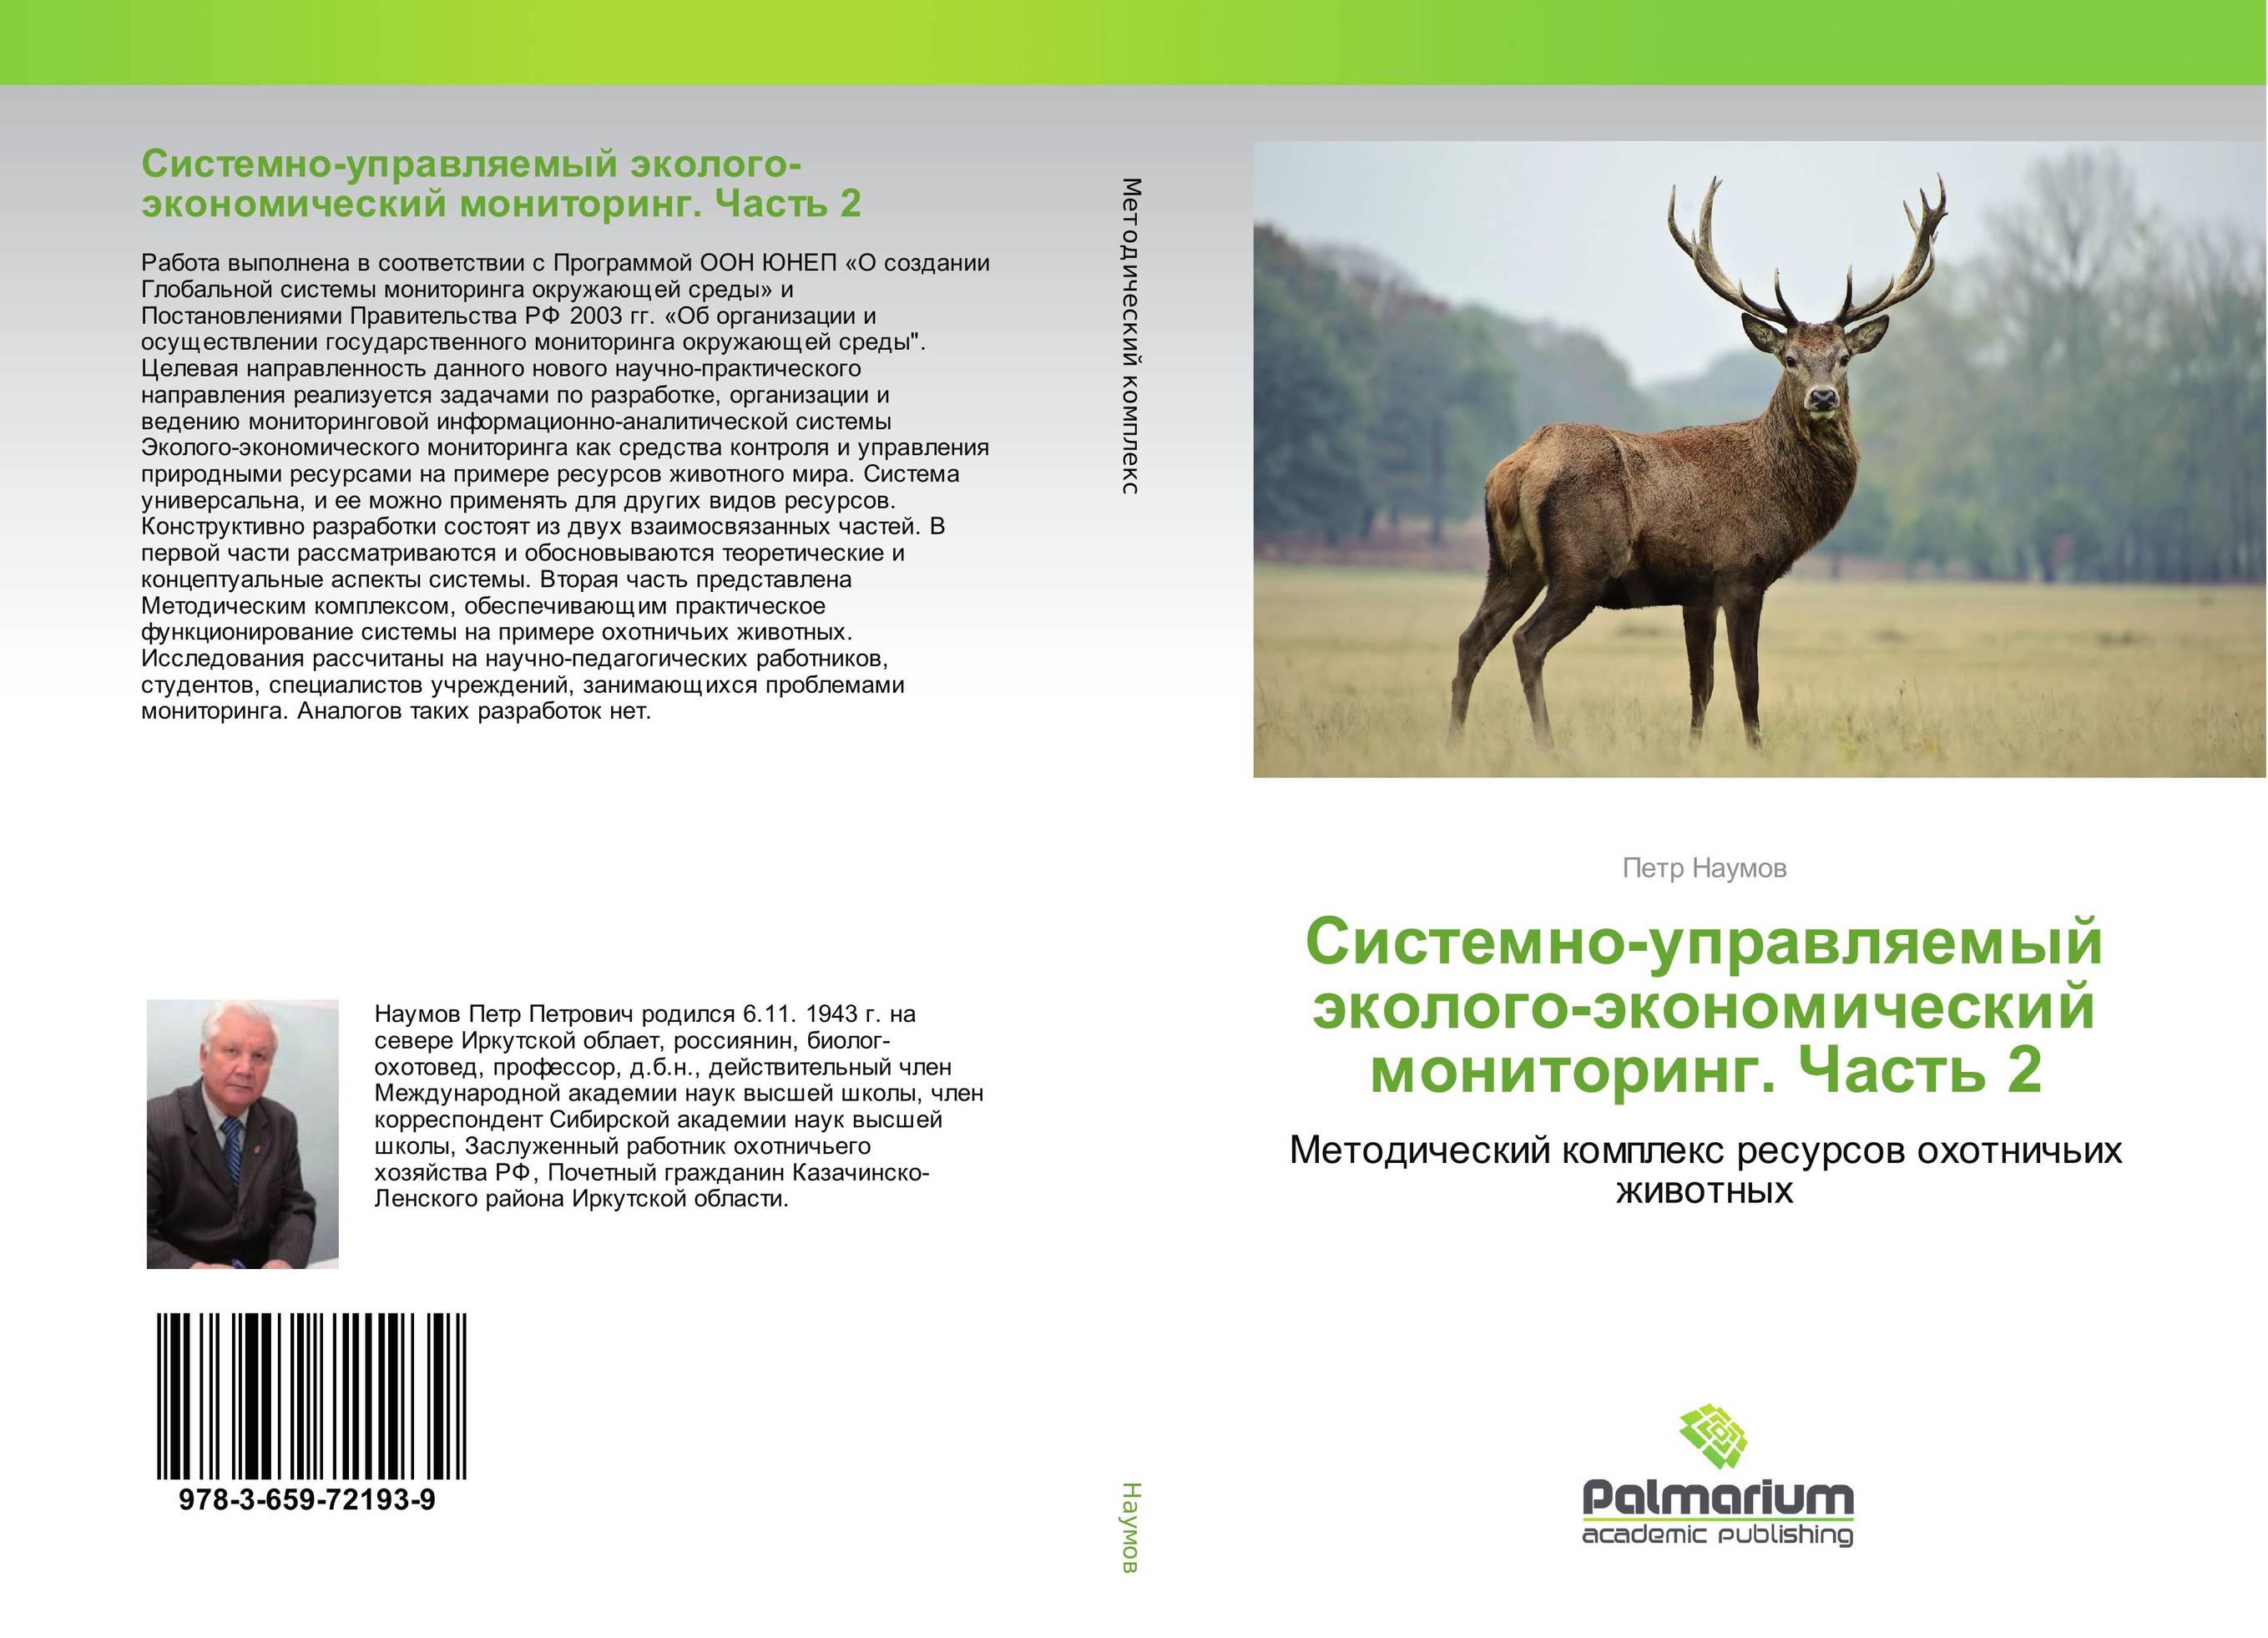 
        Системно-управляемый эколого-экономический мониторинг. Часть 2. Методический комплекс ресурсов охотничьих животных.
      